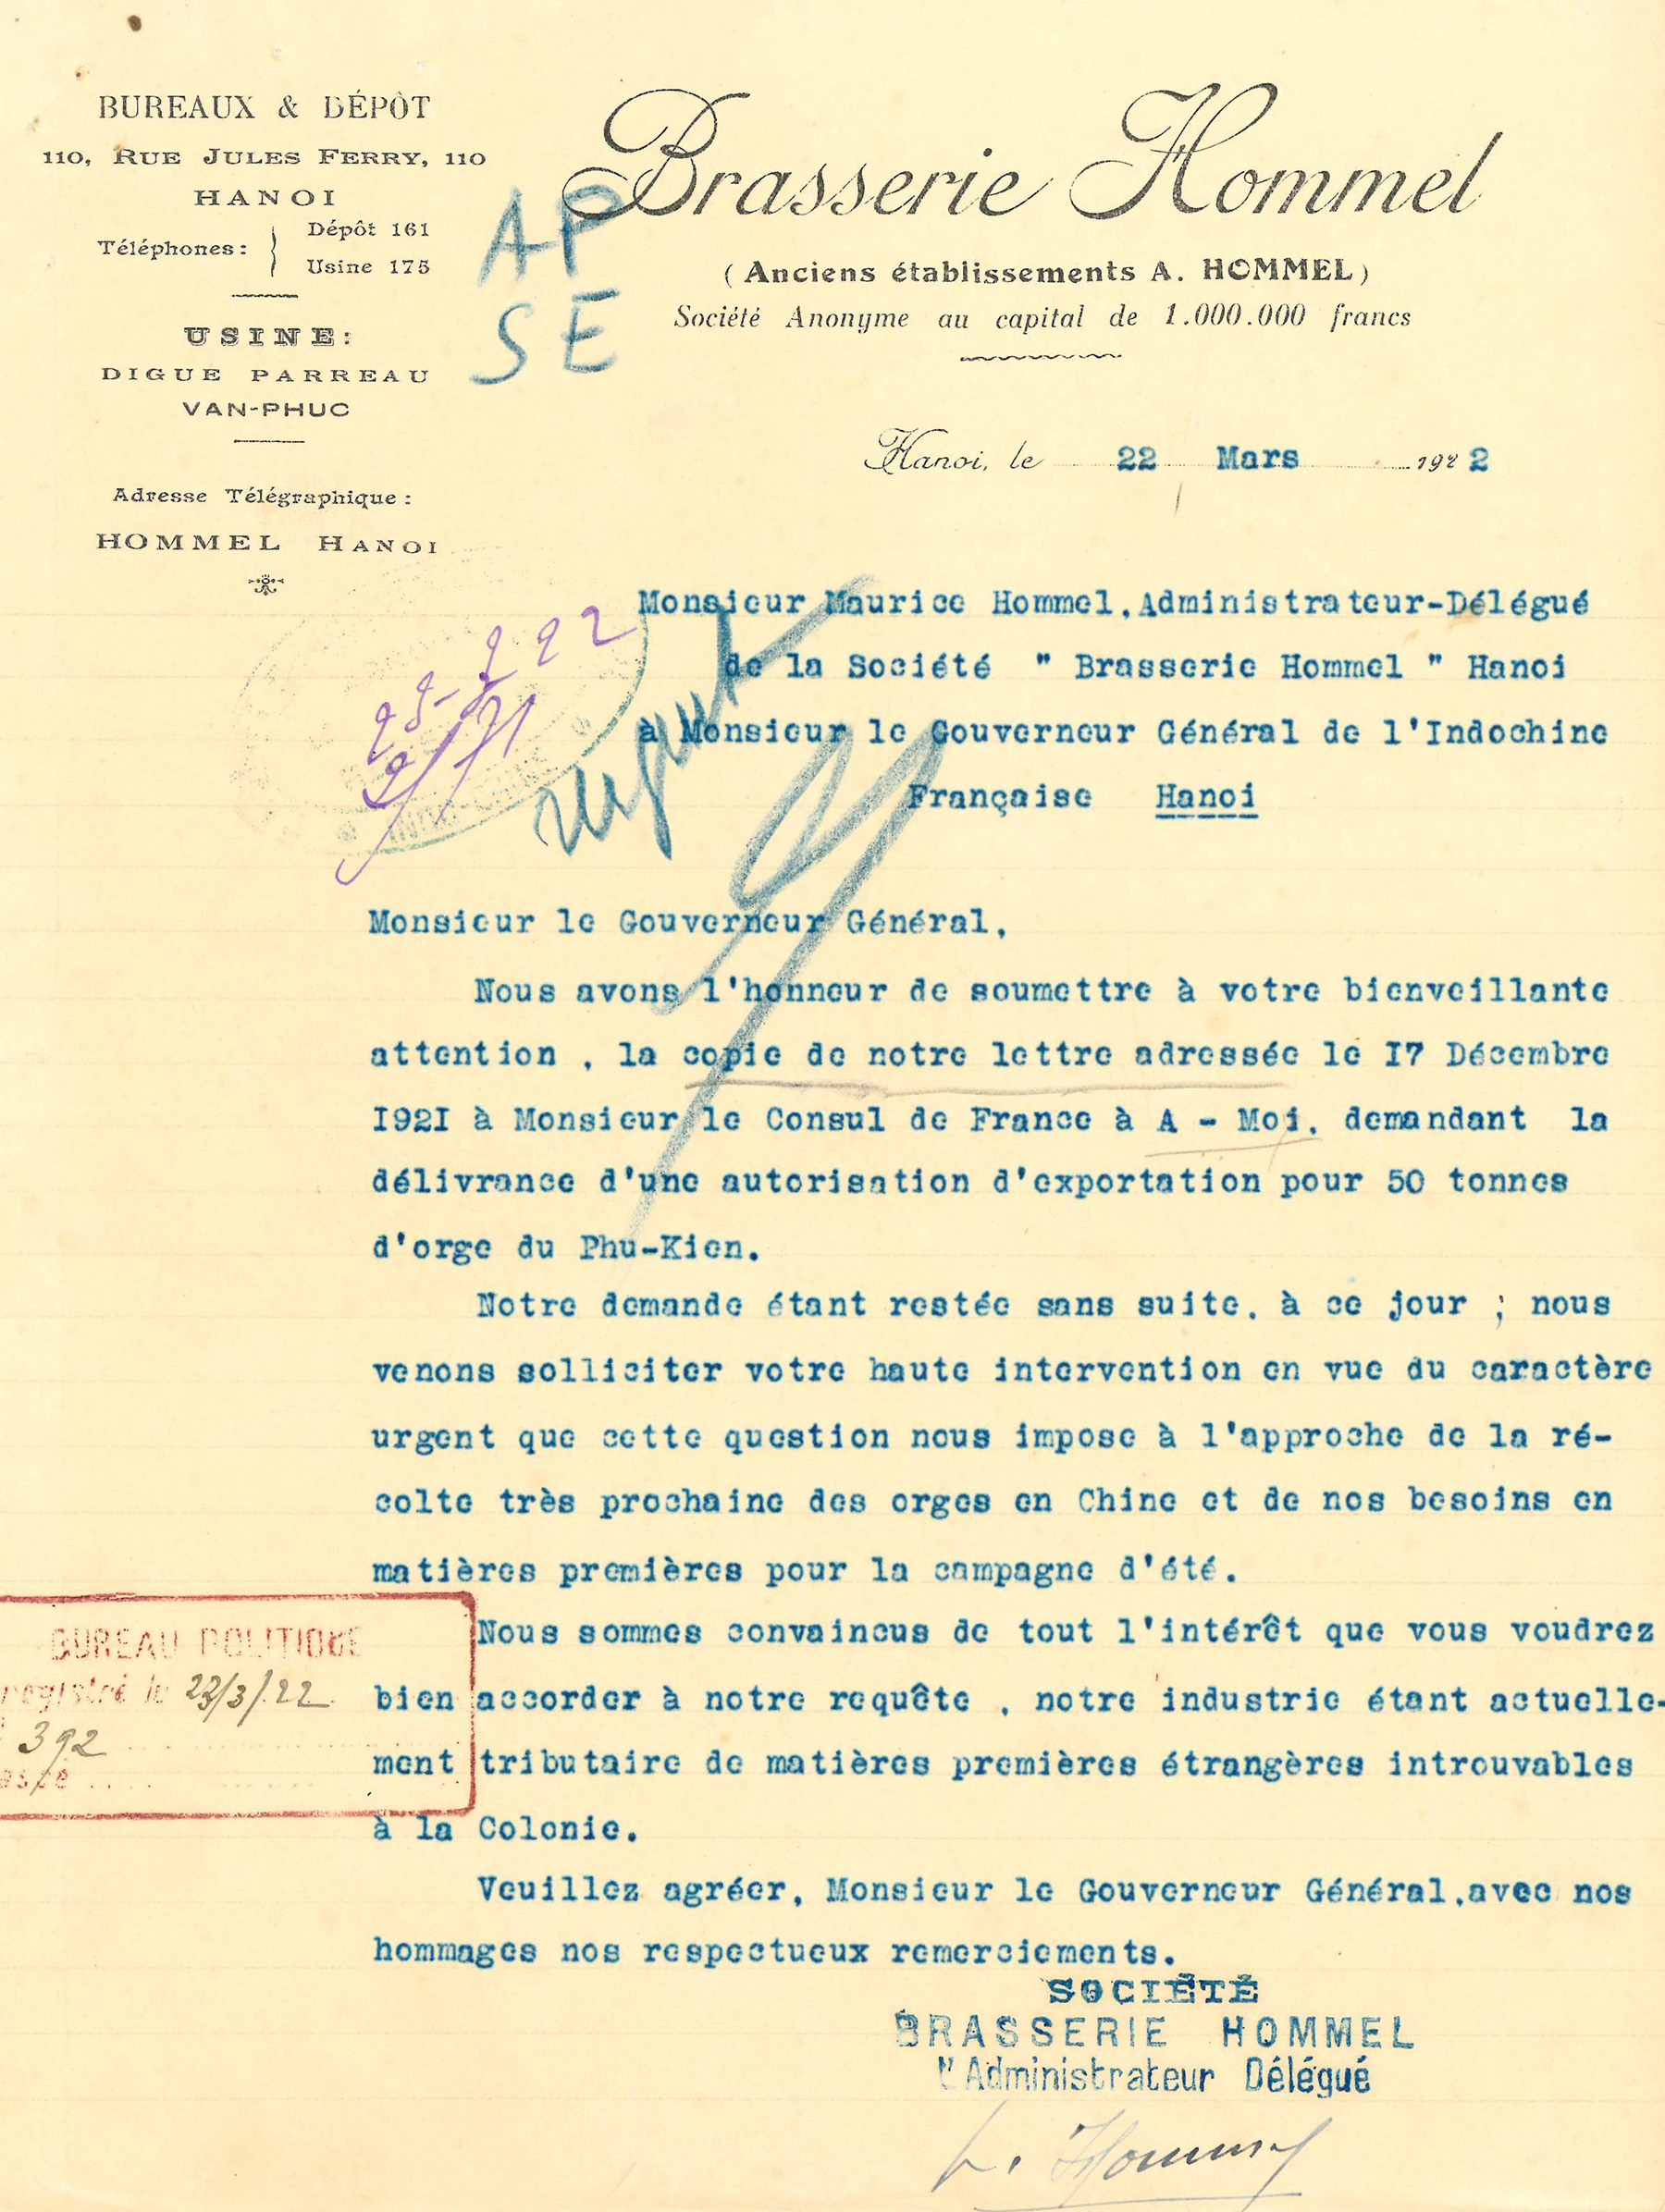 Lettre de Maurice Hommel au Gouverneur général de l’Indochine au sujet de l’importation de 50 tonnes d’orge provenant du Phu Kien (Chine) pour les besoins de la brasserie (22 mars 1922)